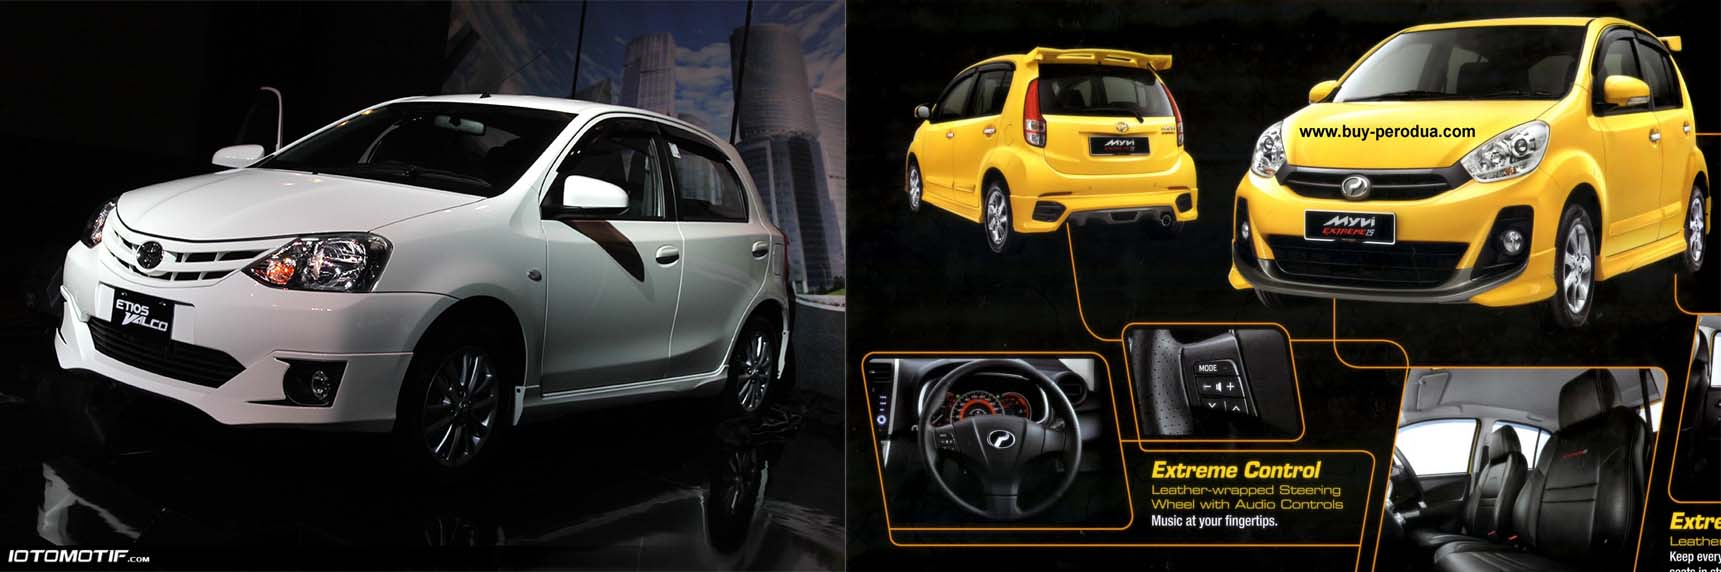 Gambar Modifikasi Body Mobil Etios Terlengkap Modifikasi Mobil Sedan